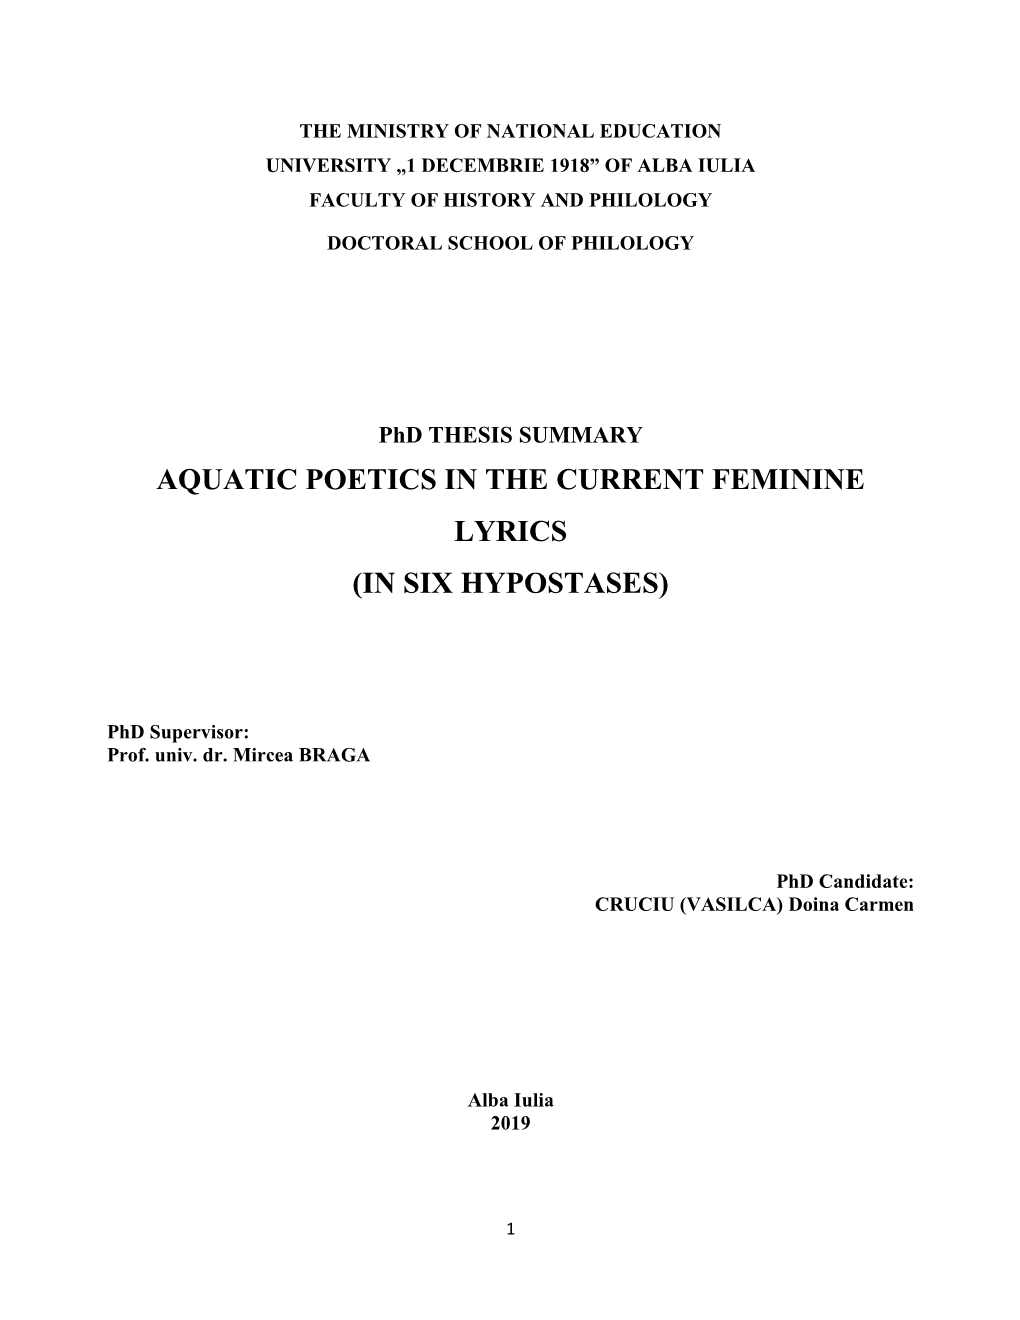 Aquatic Poetics in the Current Feminine Lyrics (In Six Hypostases)